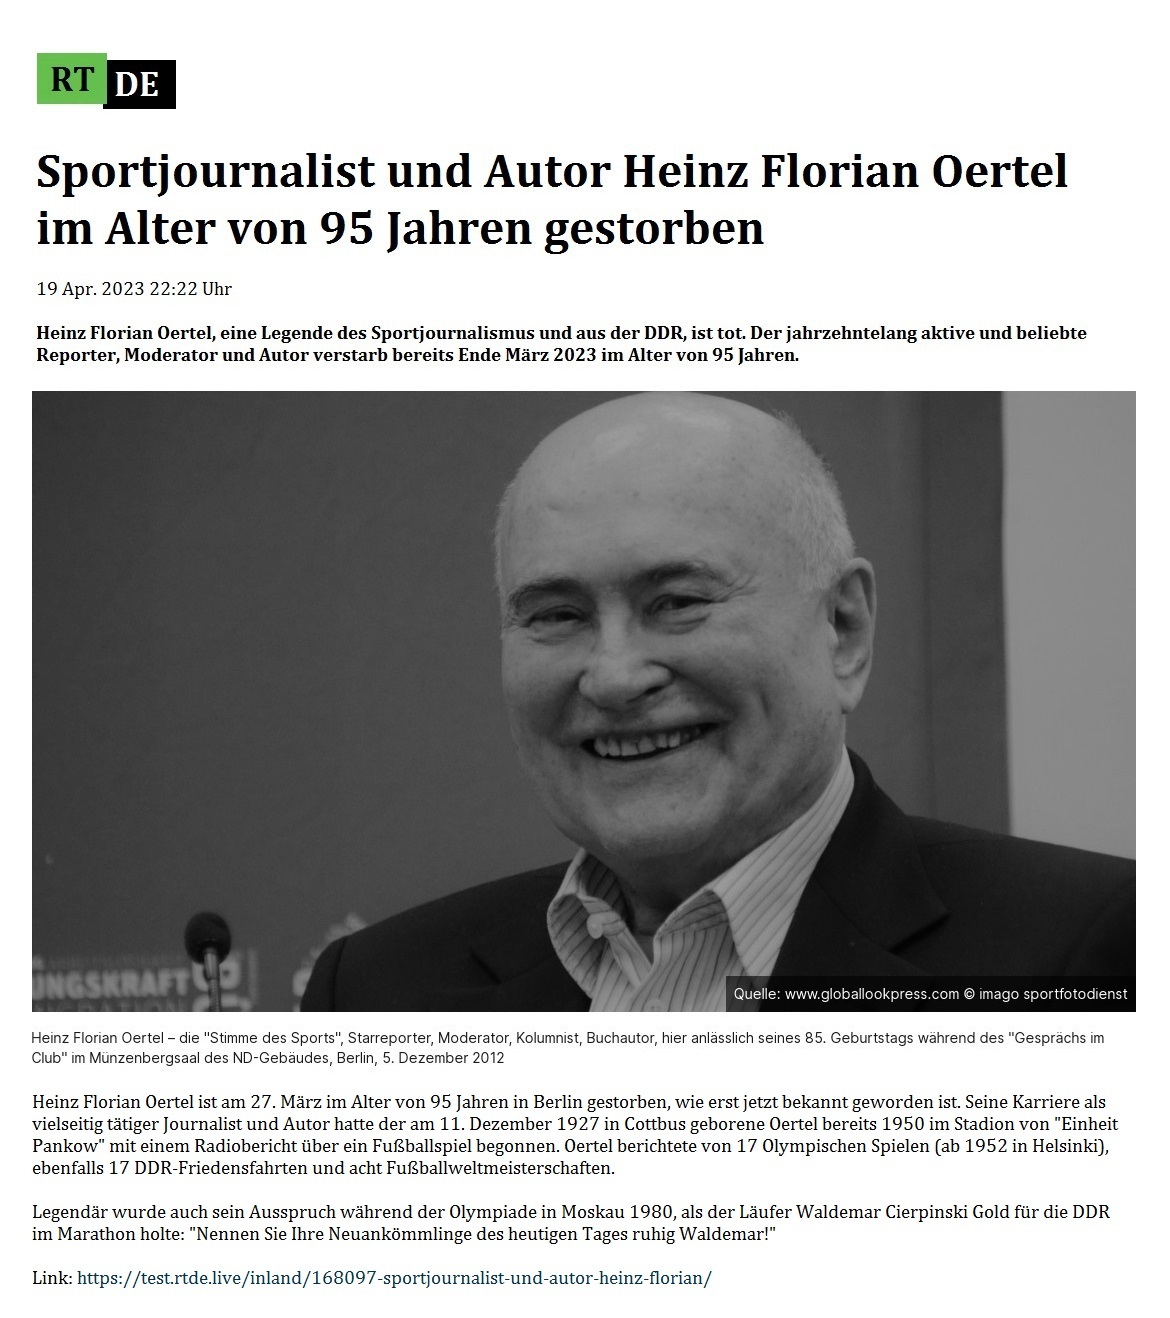 Sportjournalist und Autor Heinz Florian Oertel im Alter von 95 Jahren gestorben - 19 Apr. 2023 22:22 Uhr - Heinz Florian Oertel, eine Legende des Sportjournalismus und aus der DDR, ist tot. Der jahrzehntelang aktive und beliebte Reporter, Moderator und Autor verstarb bereits Ende März 2023 im Alter von 95 Jahren. - 19 Apr. 2023 22:22 Uhr - RT DE - Link: https://test.rtde.live/inland/168097-sportjournalist-und-autor-heinz-florian/